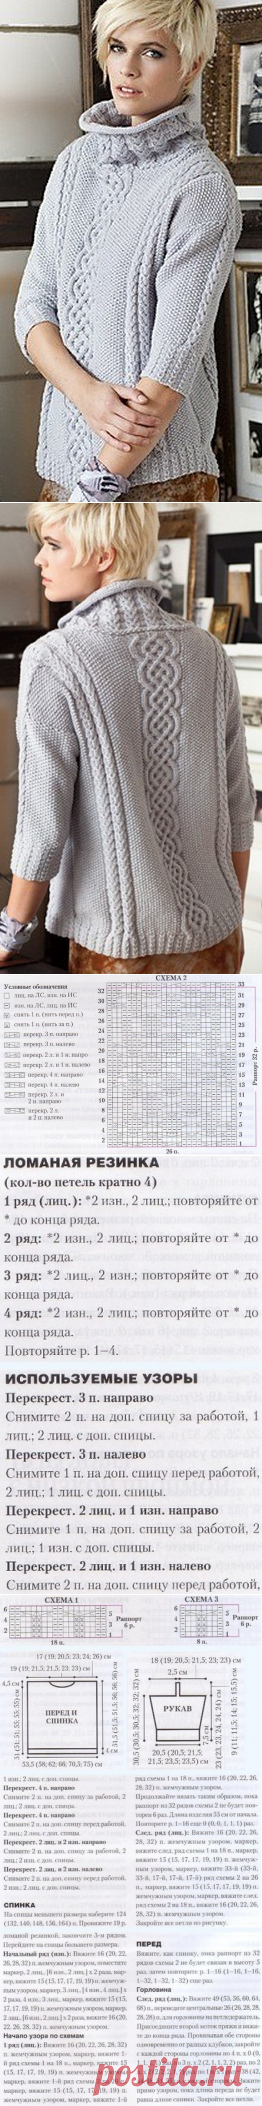 Вязание свитера спицами